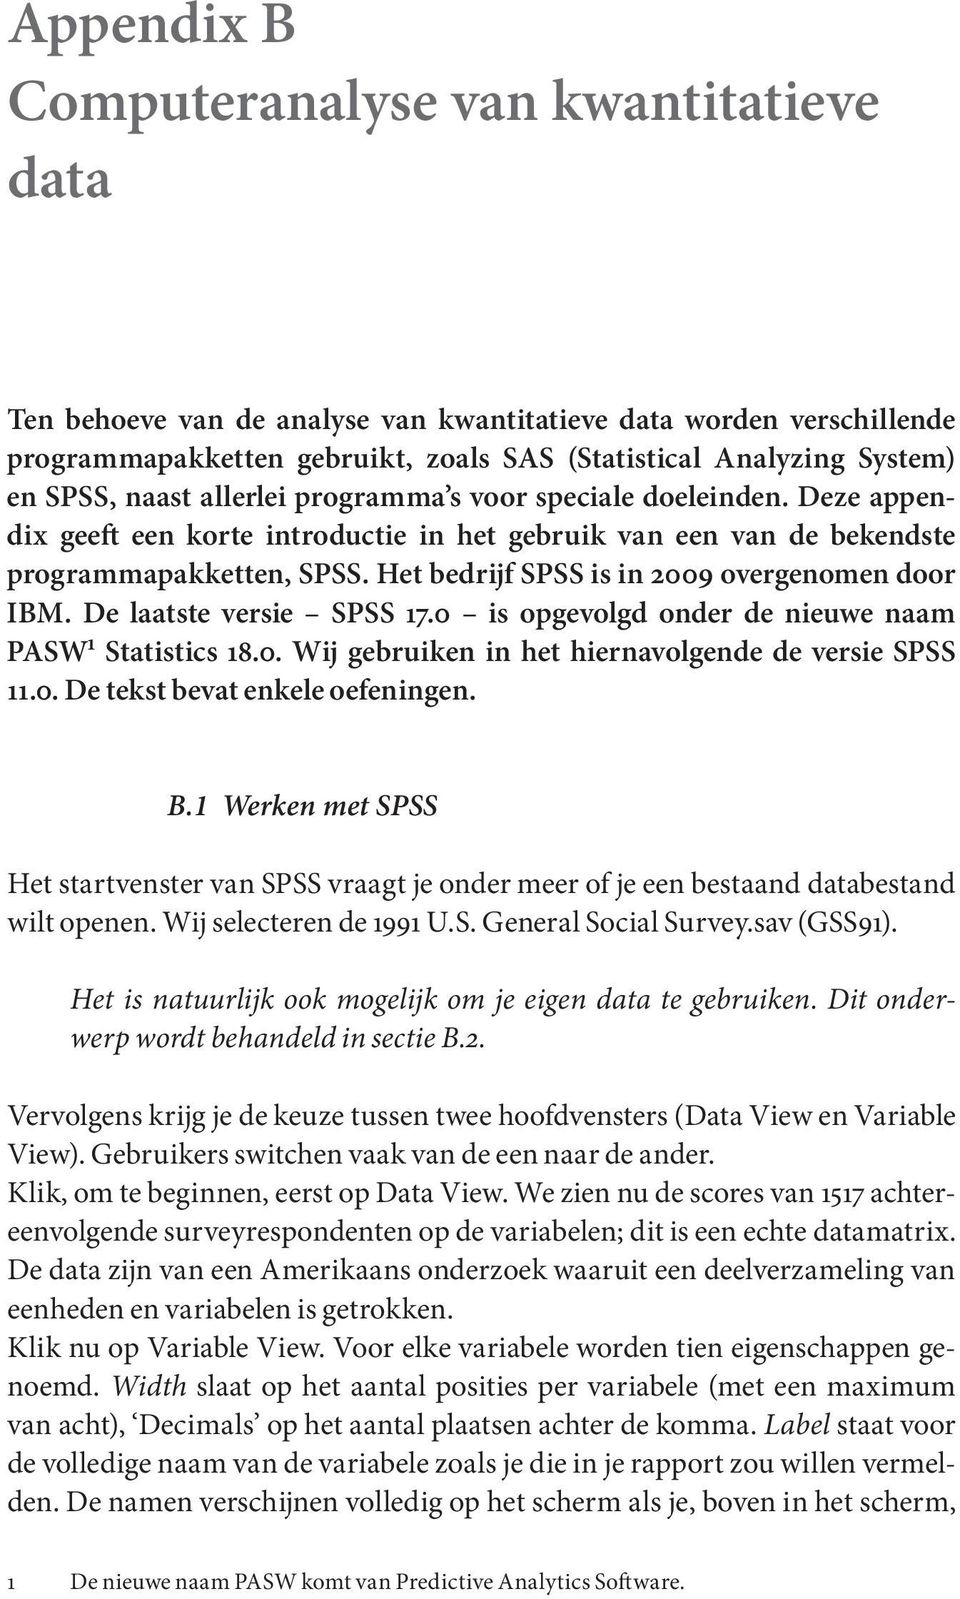 Het bedrijf SPSS is in 2009 overgenomen door IBM. De laatste versie SPSS 17.0 is opgevolgd onder de nieuwe naam PASW 1 Statistics 18.0. Wij gebruiken in het hiernavolgende de versie SPSS 11.0. De tekst bevat enkele oefeningen.